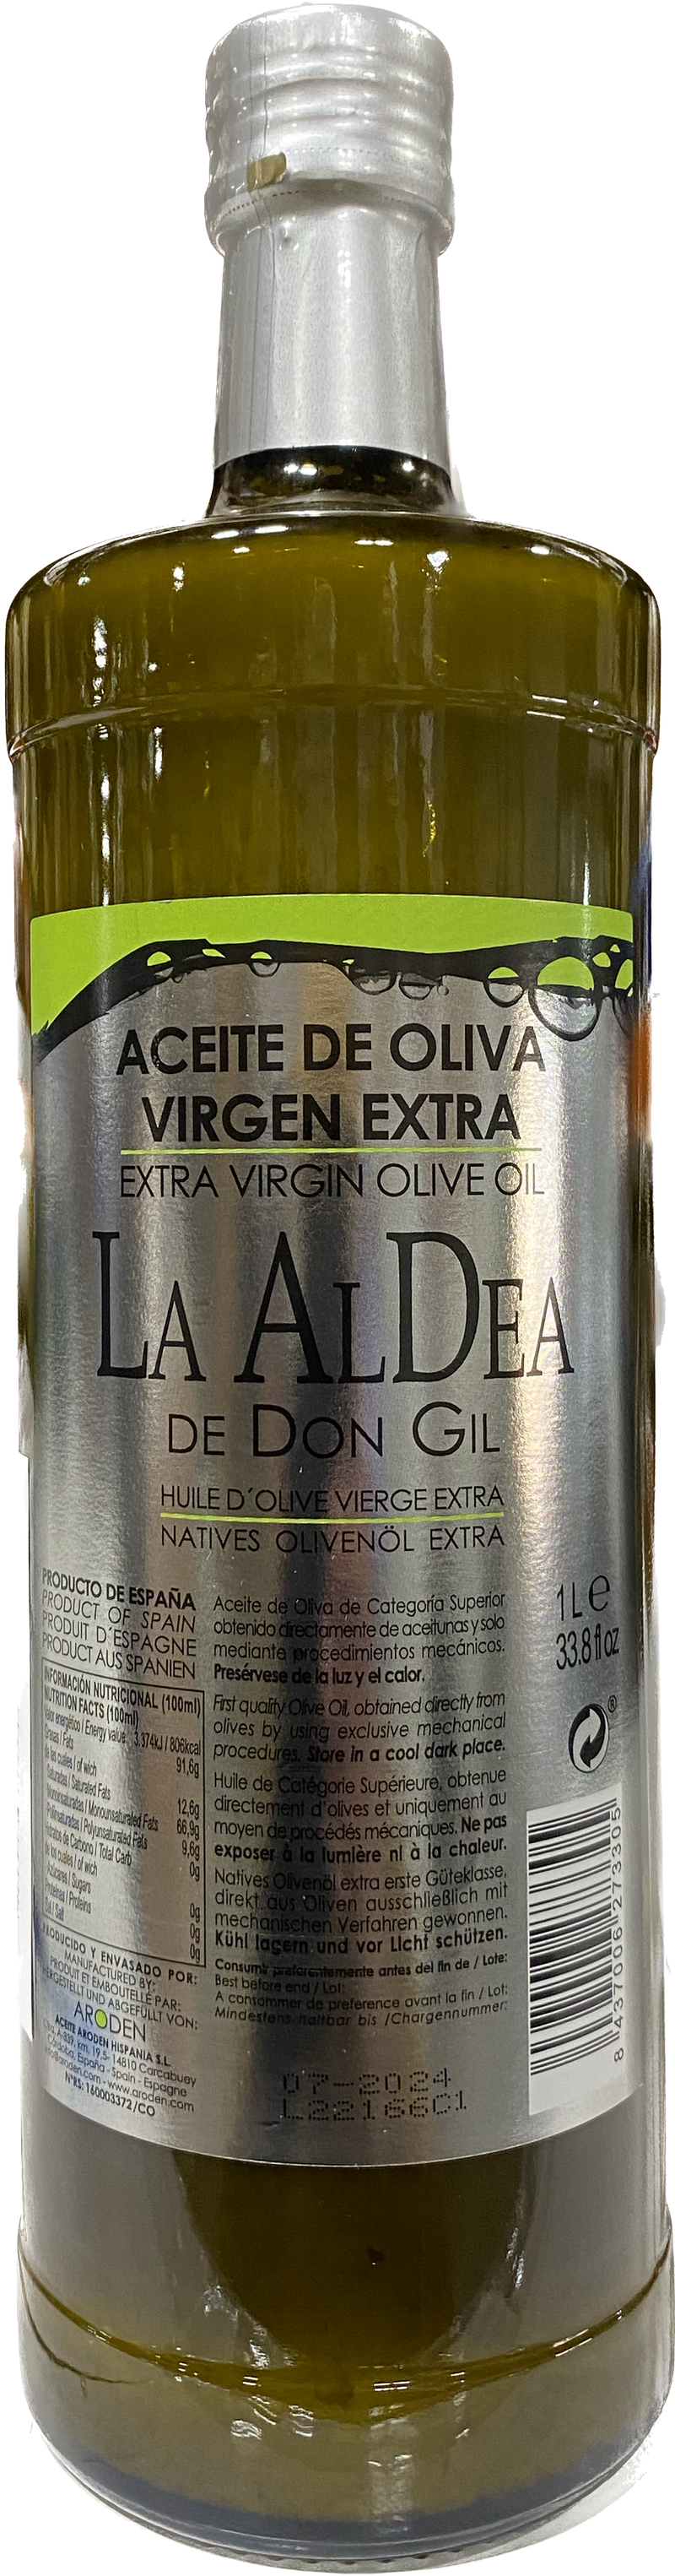 LA ALDENDE DON GIL EXTRA VIRGIN OLIVE OIL (1 LITER) - Papaya Express